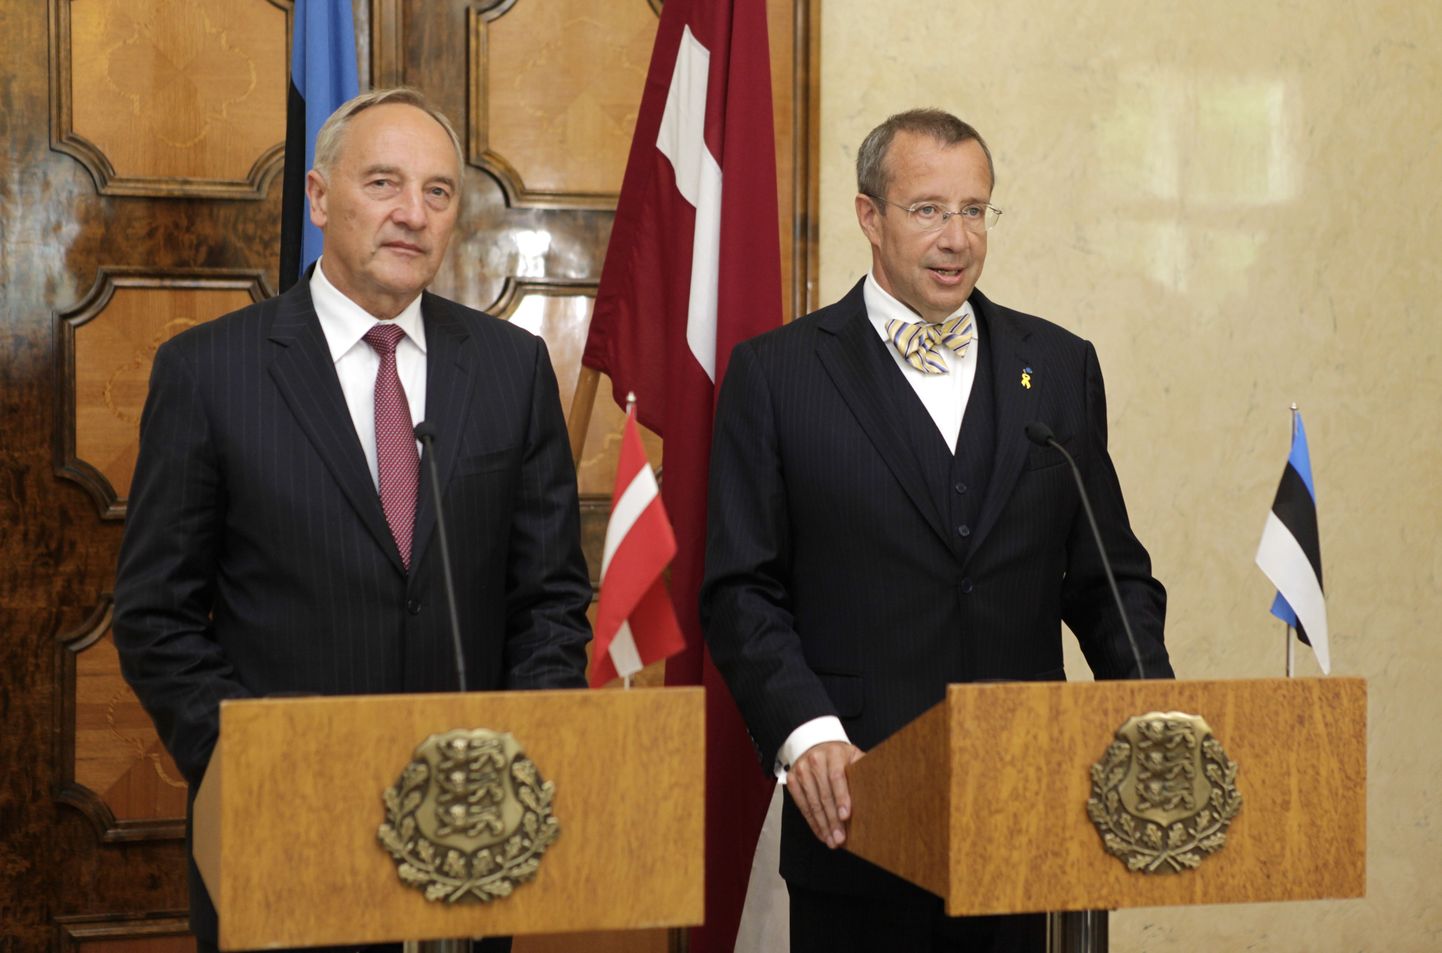 Läti president Andris Bērziņš koos Eesti riigipea Toomas Hendrik Ilvesega.